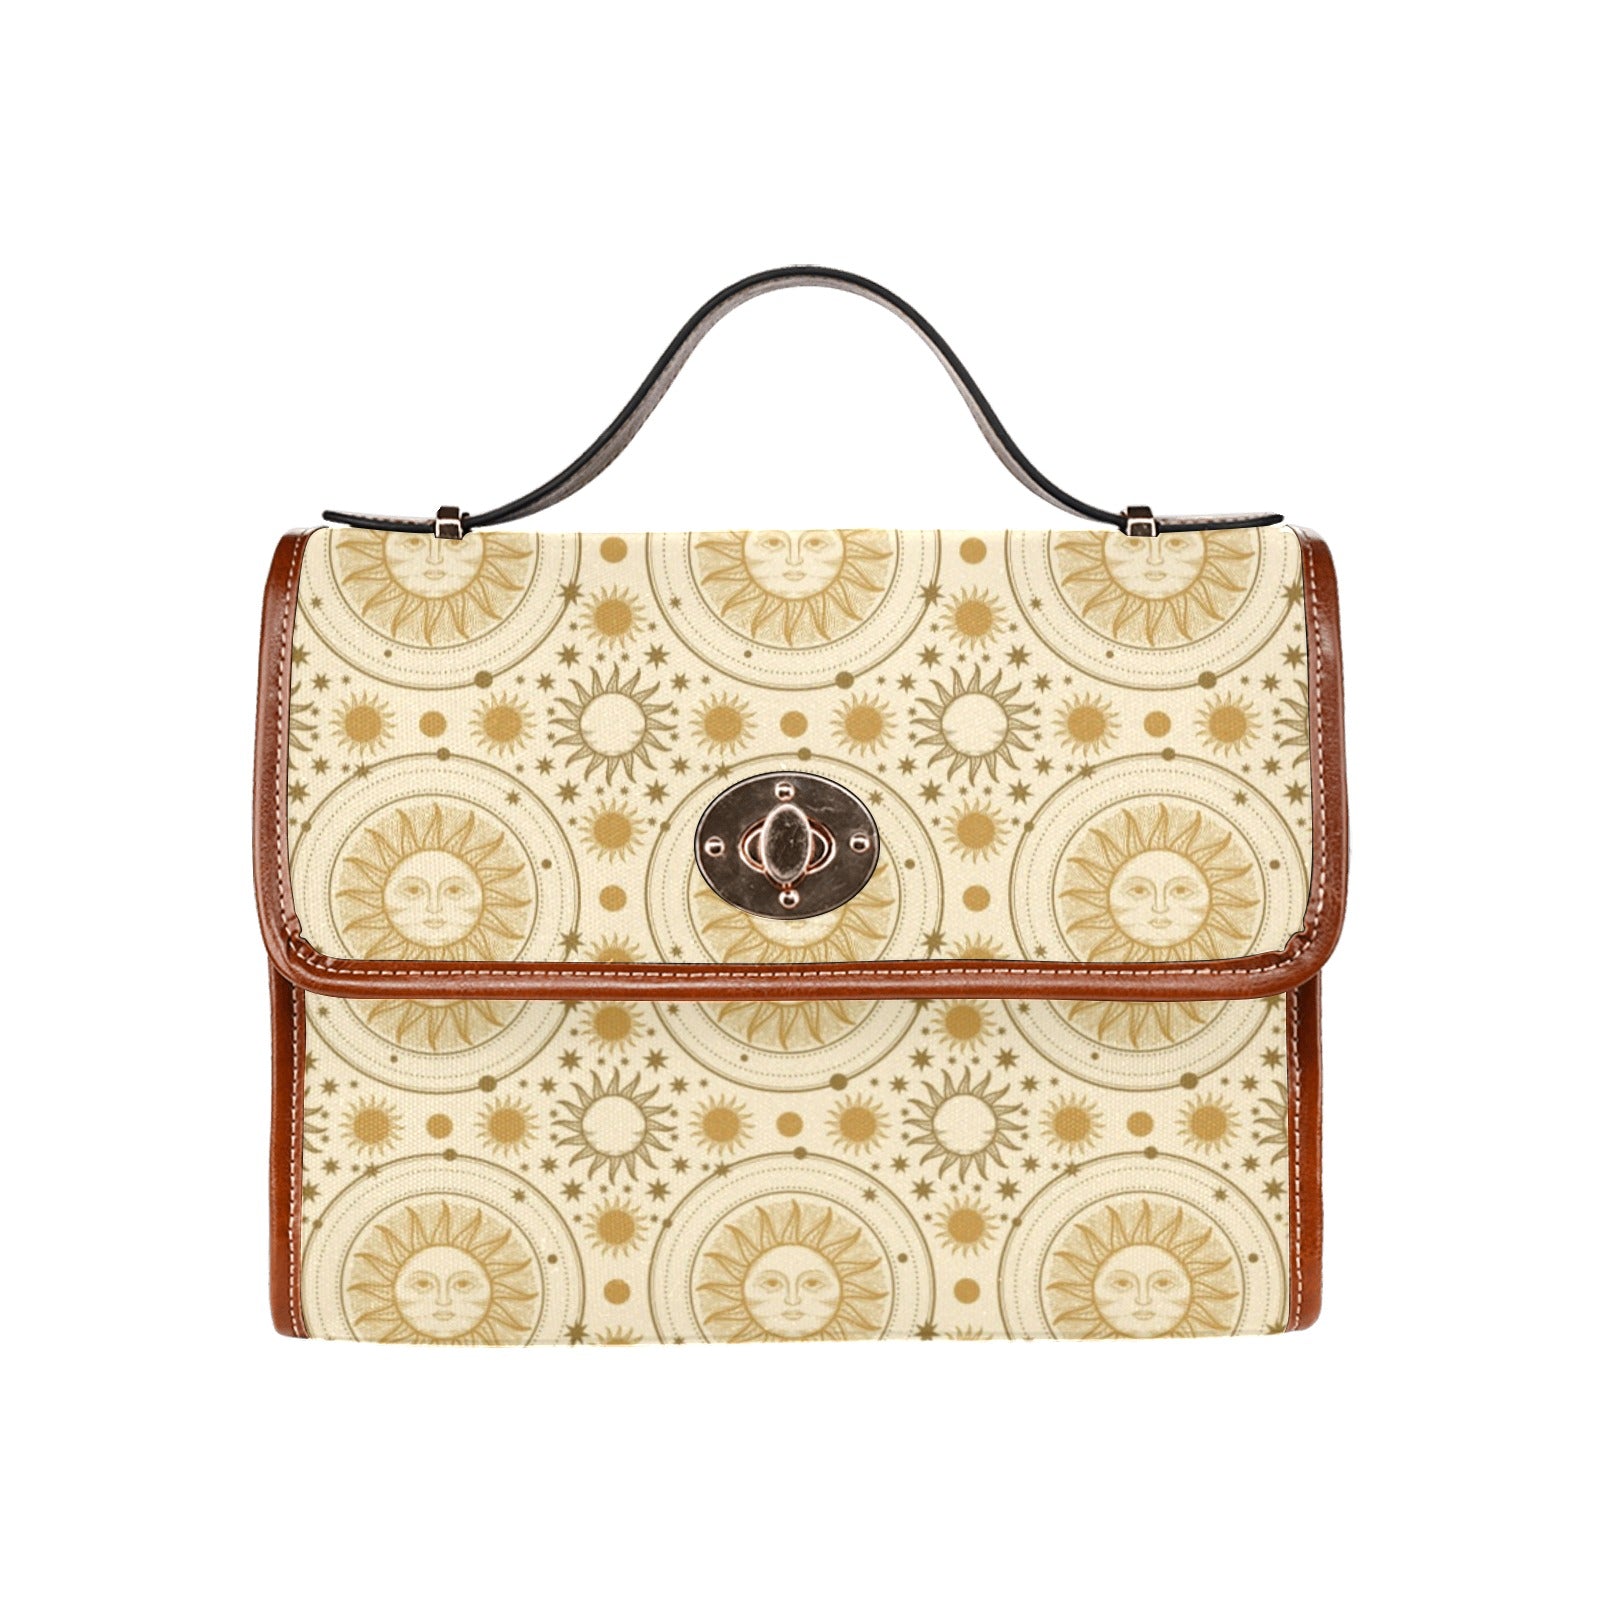 Stylish Floral Bag - Retro Rello Brand